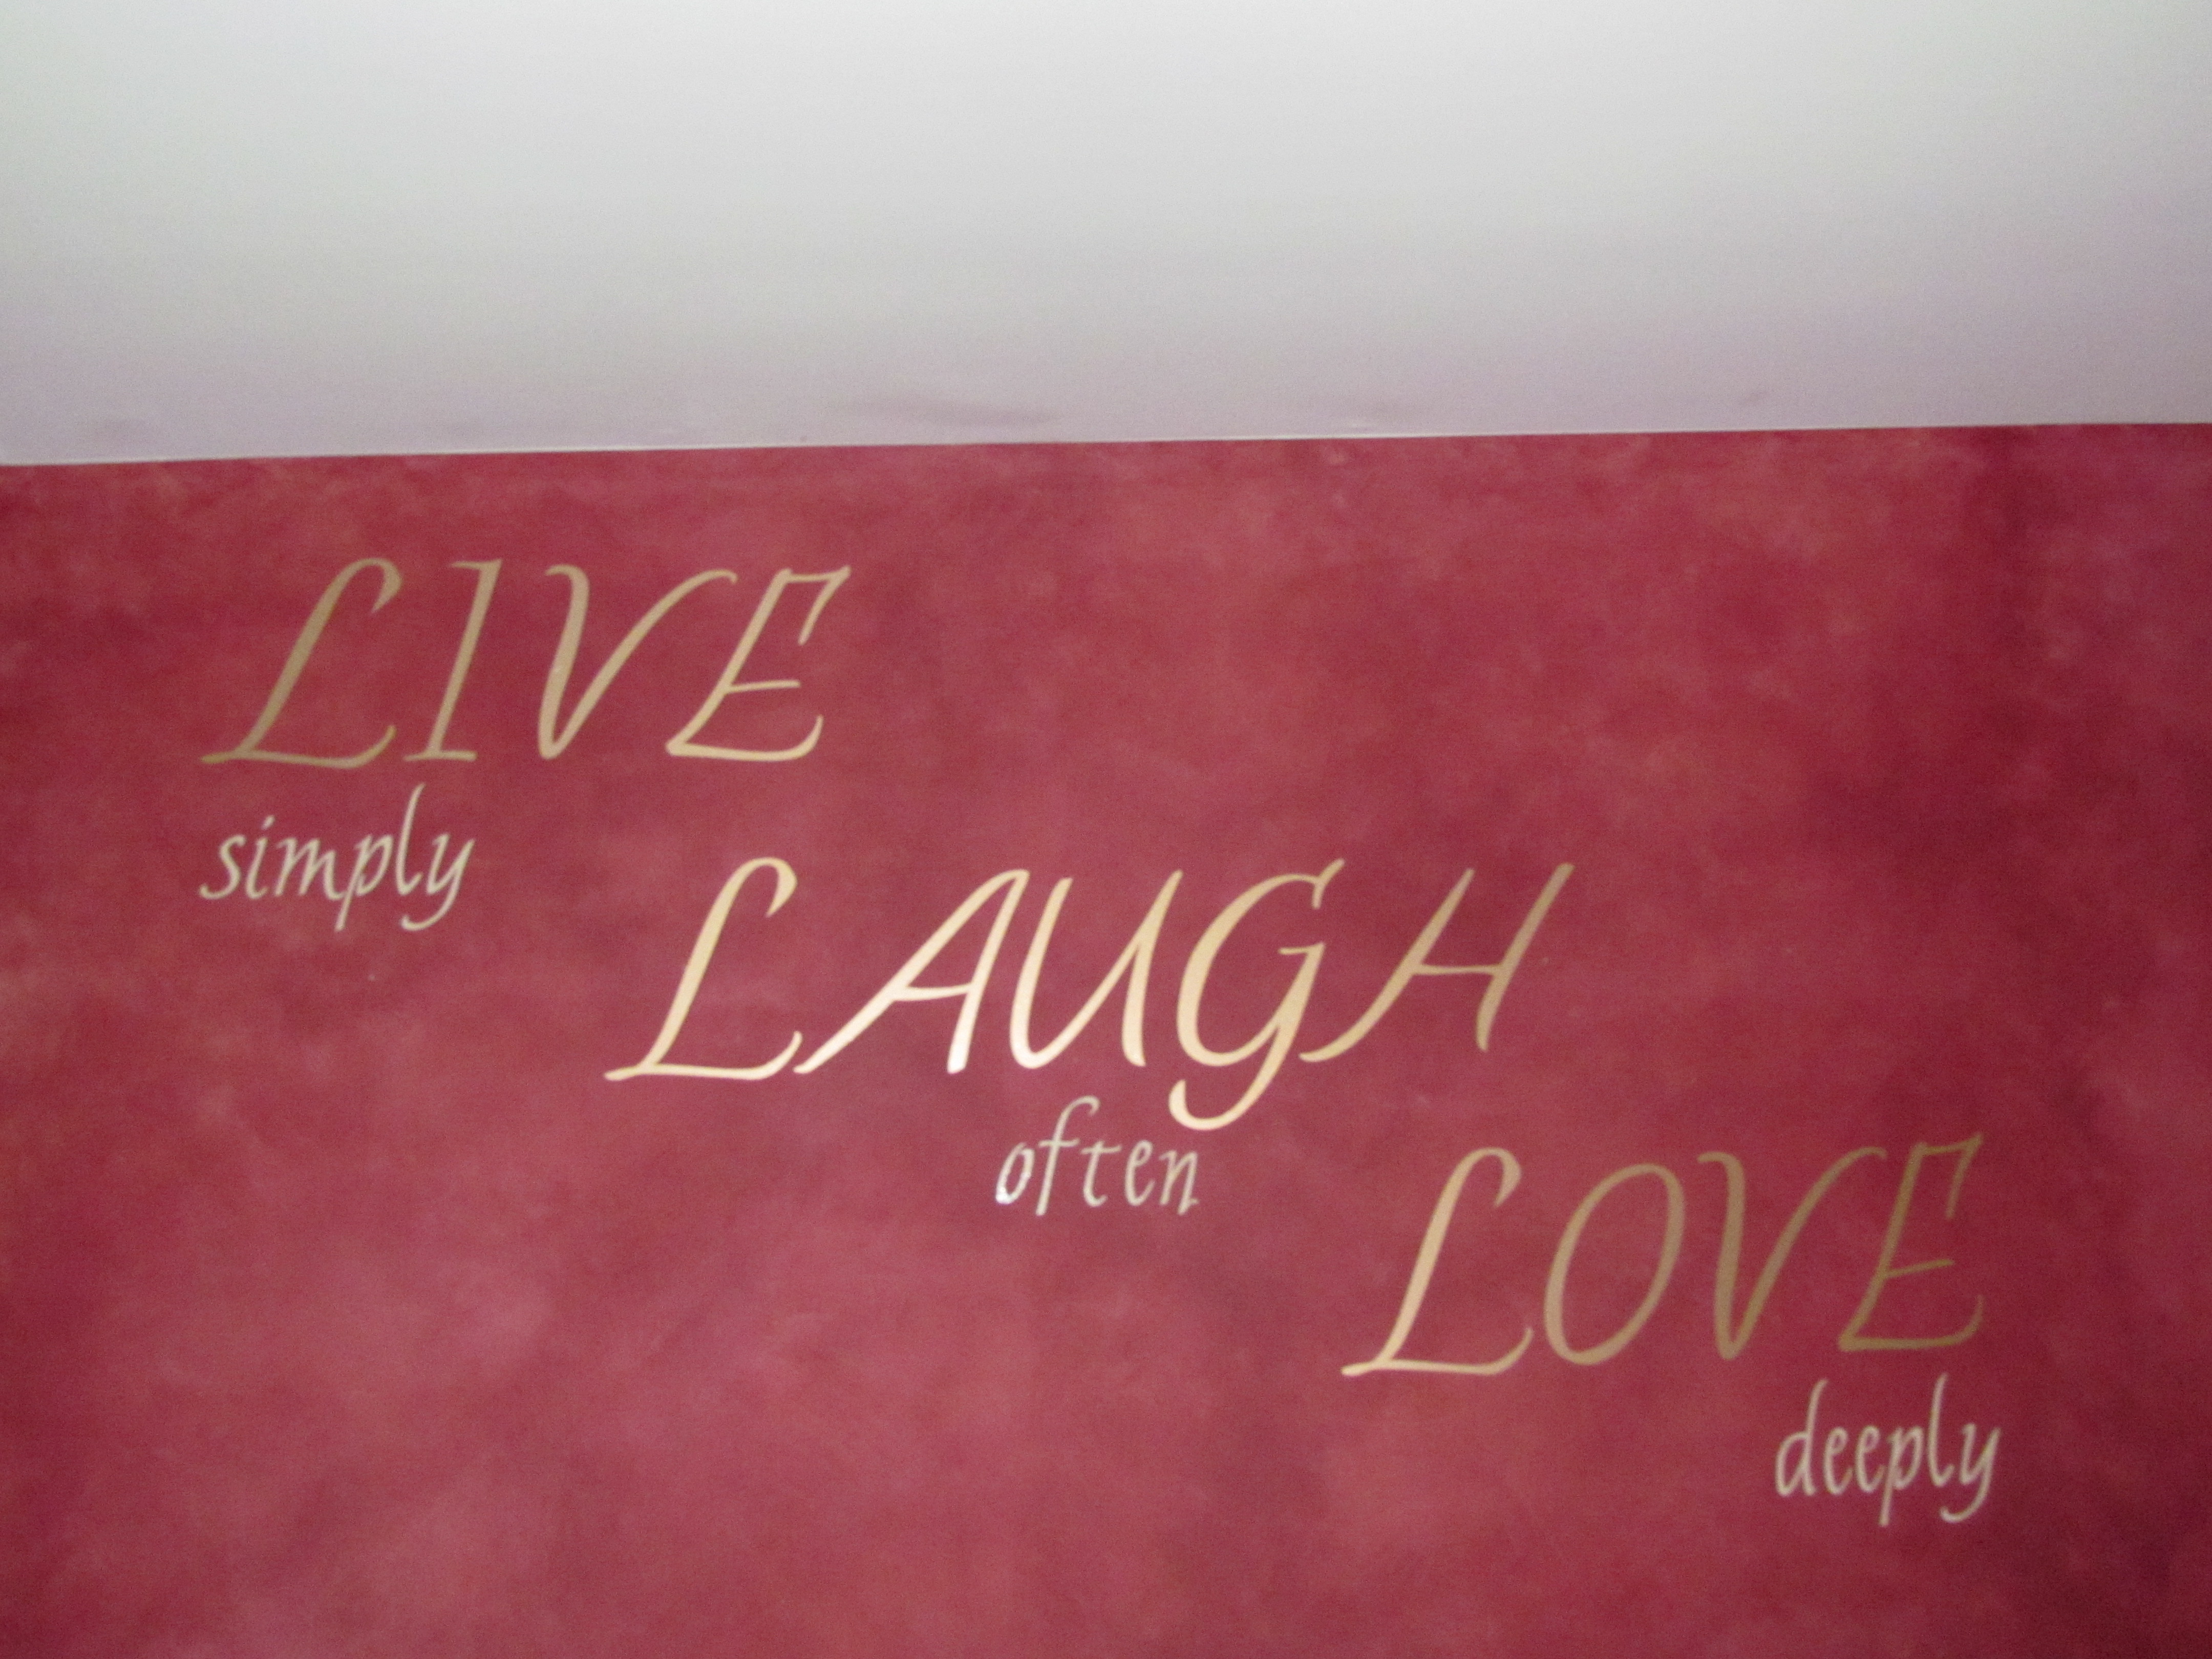 Live Laugh Love Quote